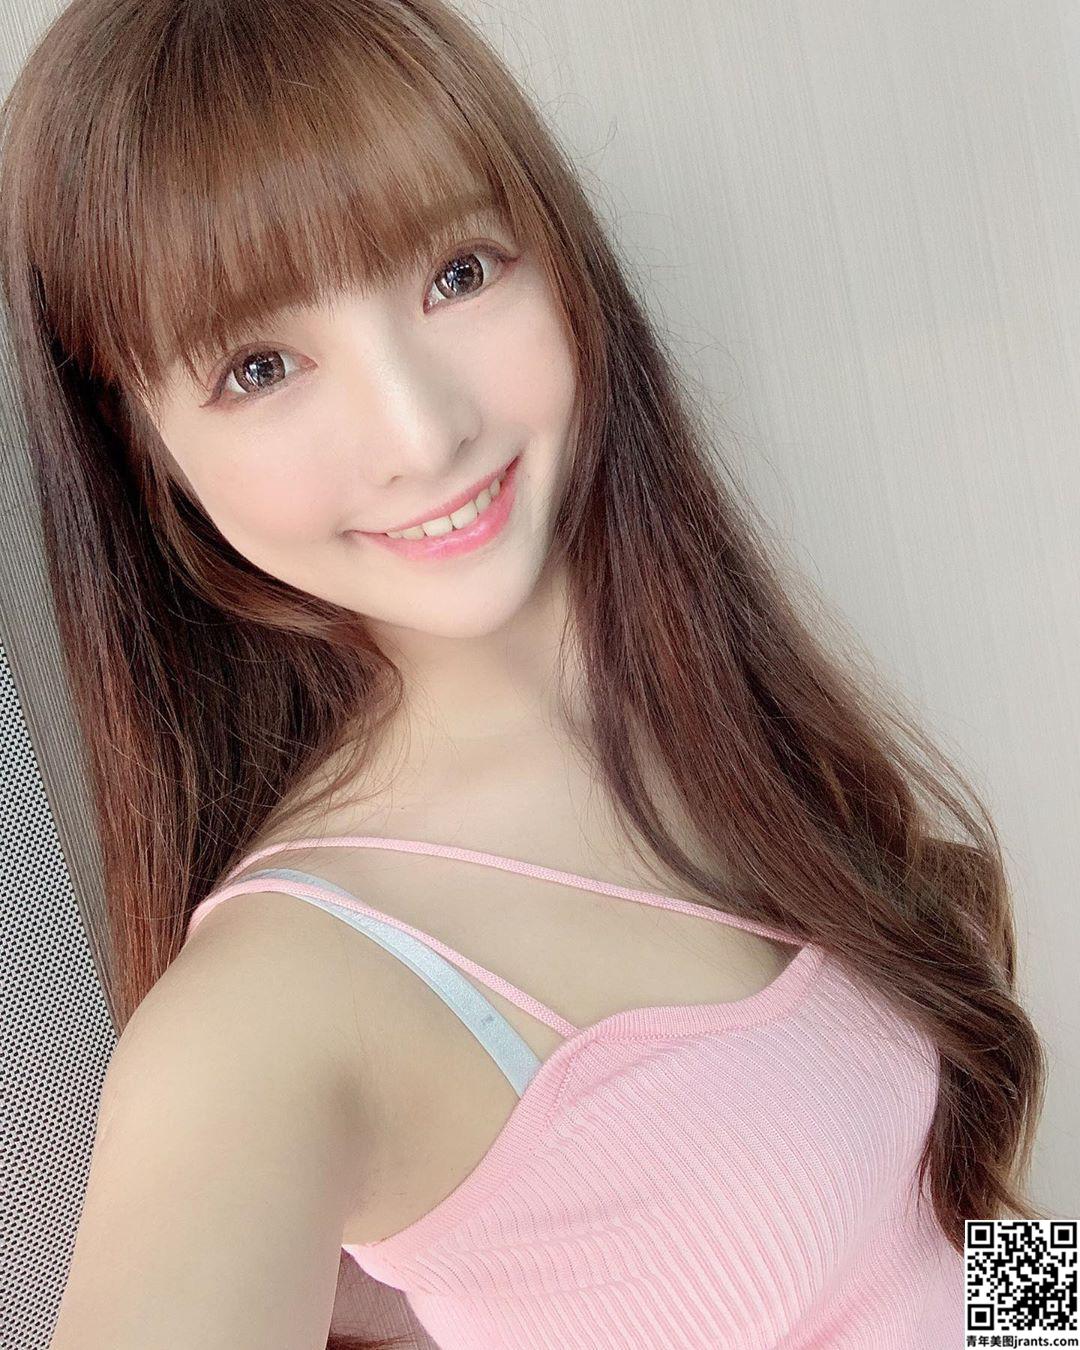 美女设计师夏咪天使笑容　小背心散发健康性感美态　 (31P)